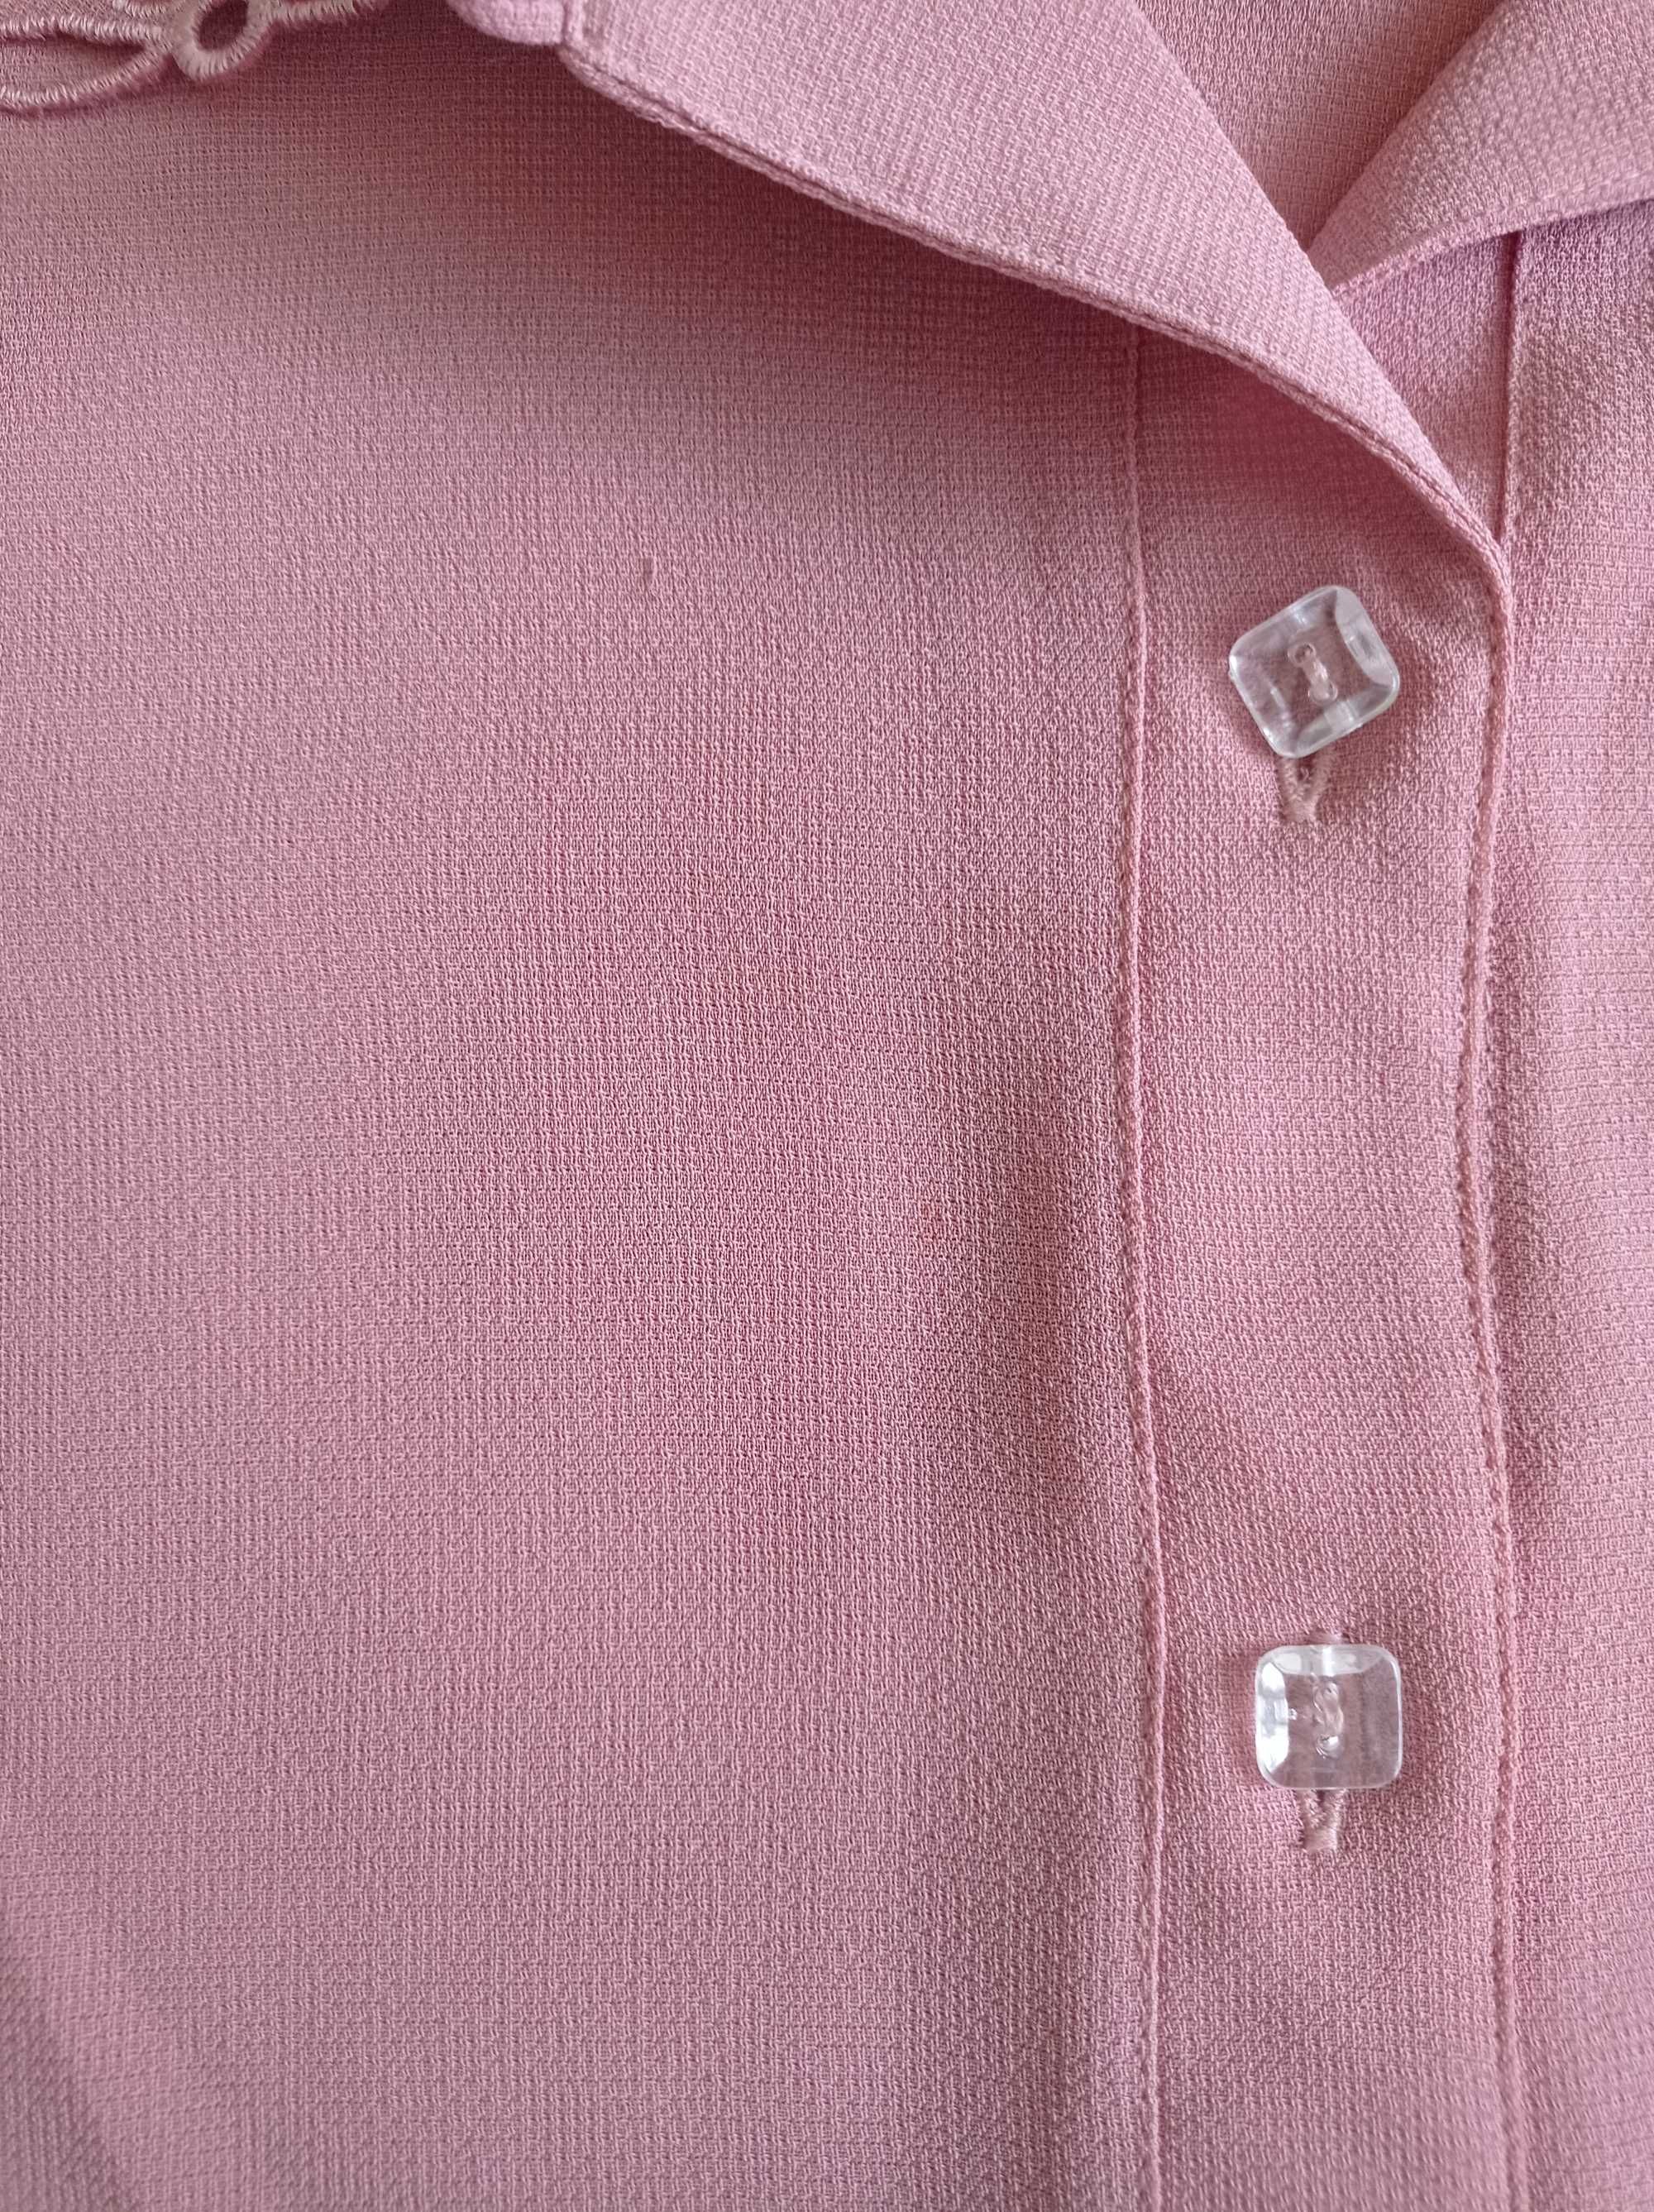 Koszula z krótkim rękawem, różowa, 3XL, XXXL